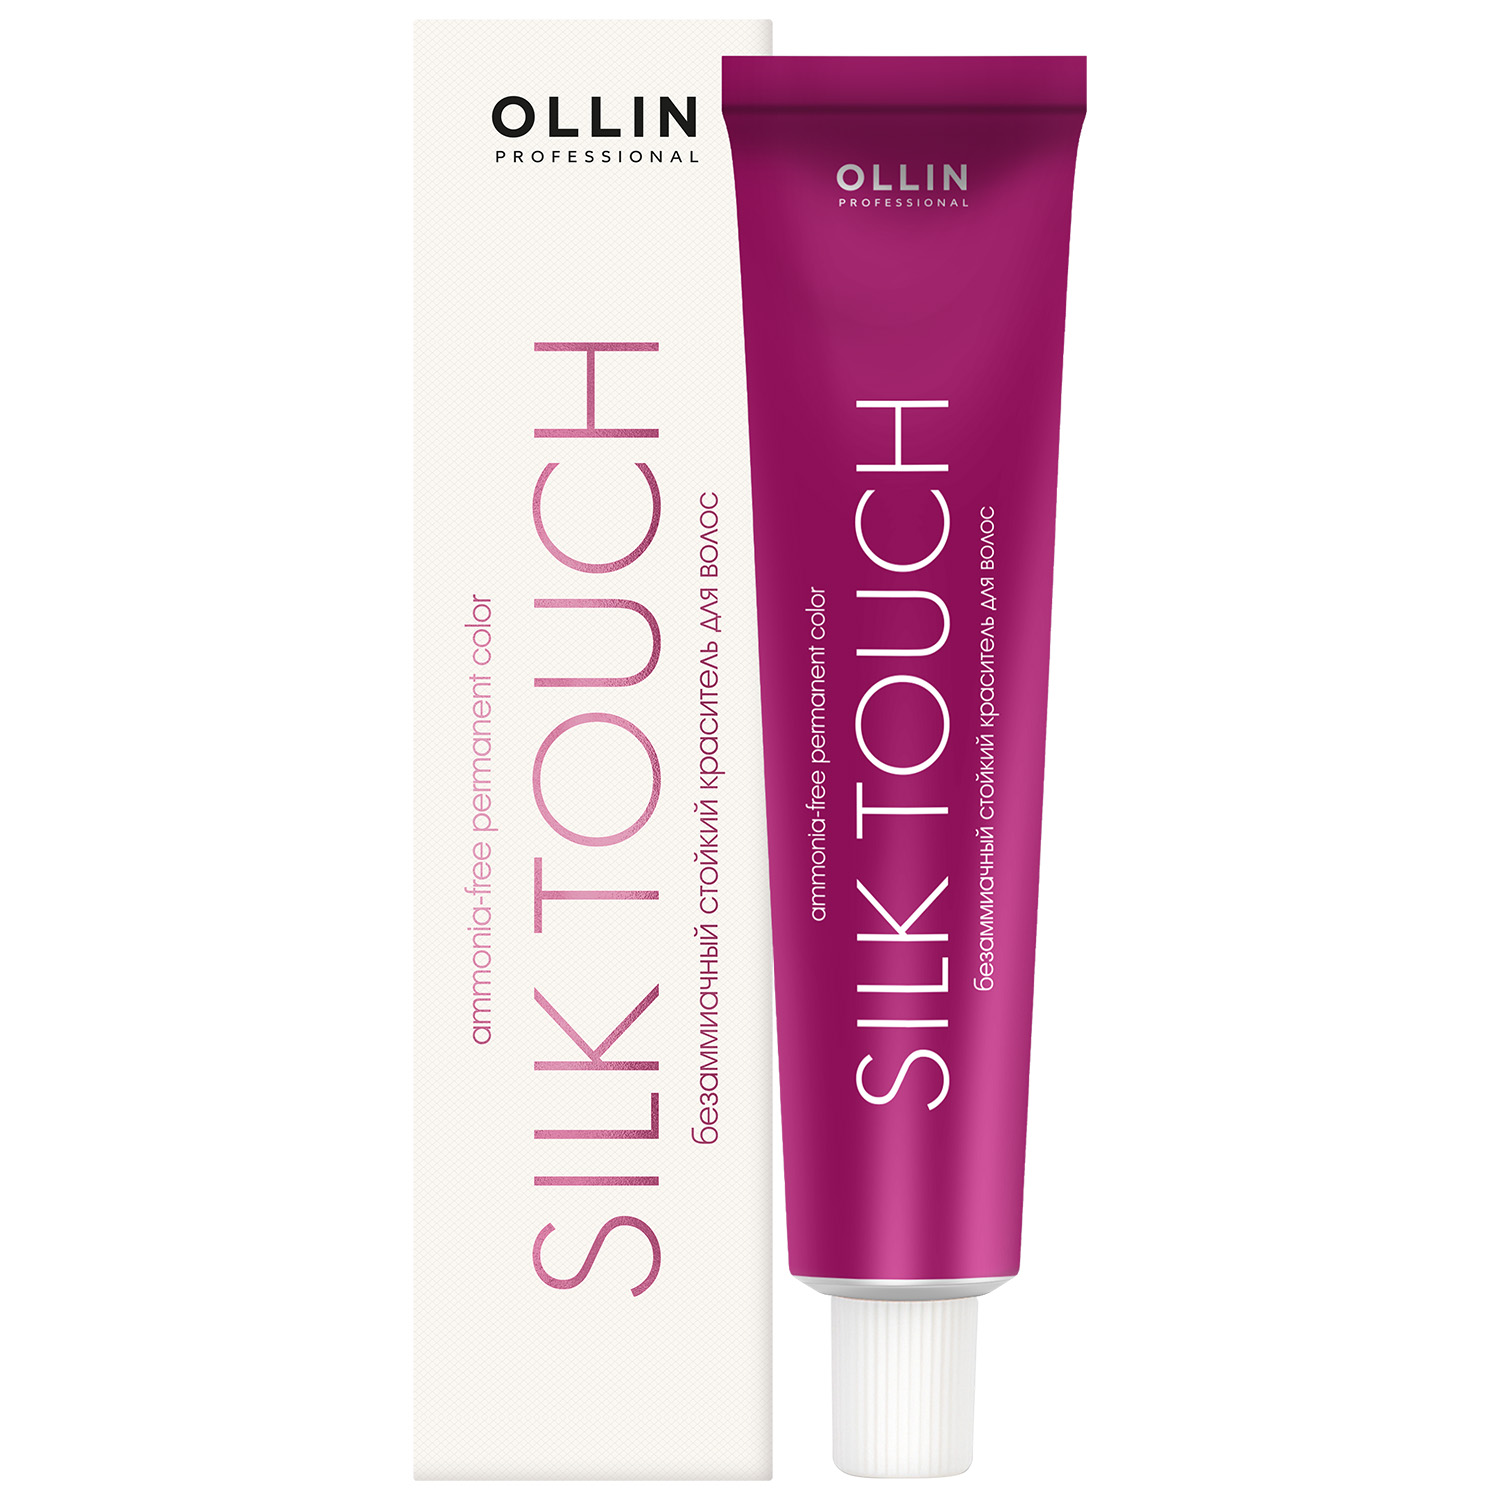 Ollin Professional Безаммиачный стойкий краситель для волос Silk Touch, 60 мл (Ollin Professional, Silk Touch)